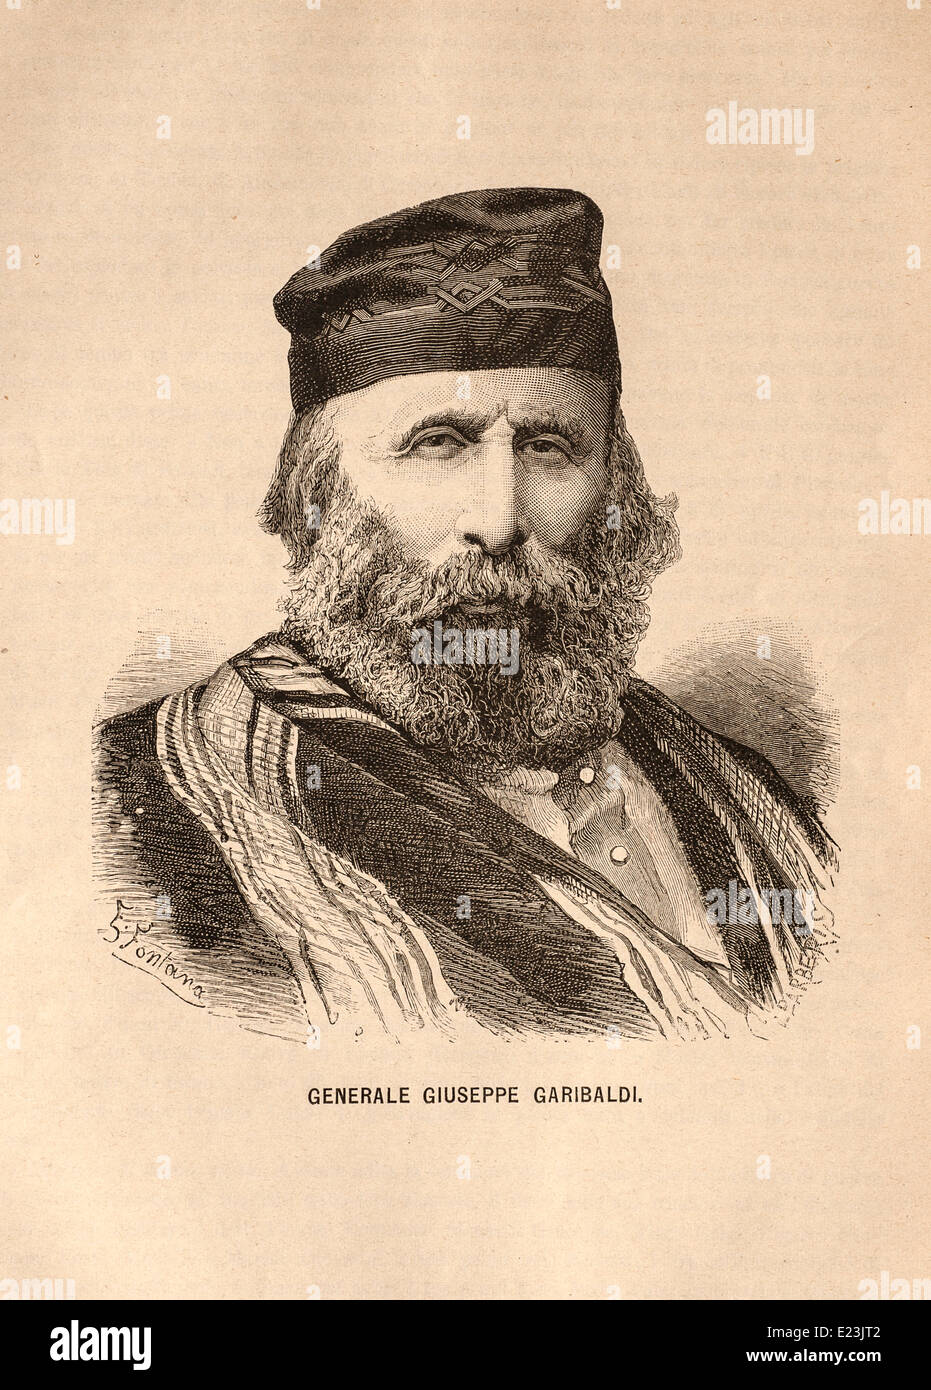 Giuseppe Mazzini aus dem Buch der Jessie W. Mario des Lebens von Mazzini.  Der General Giuseppe Garibaldi Stockfoto